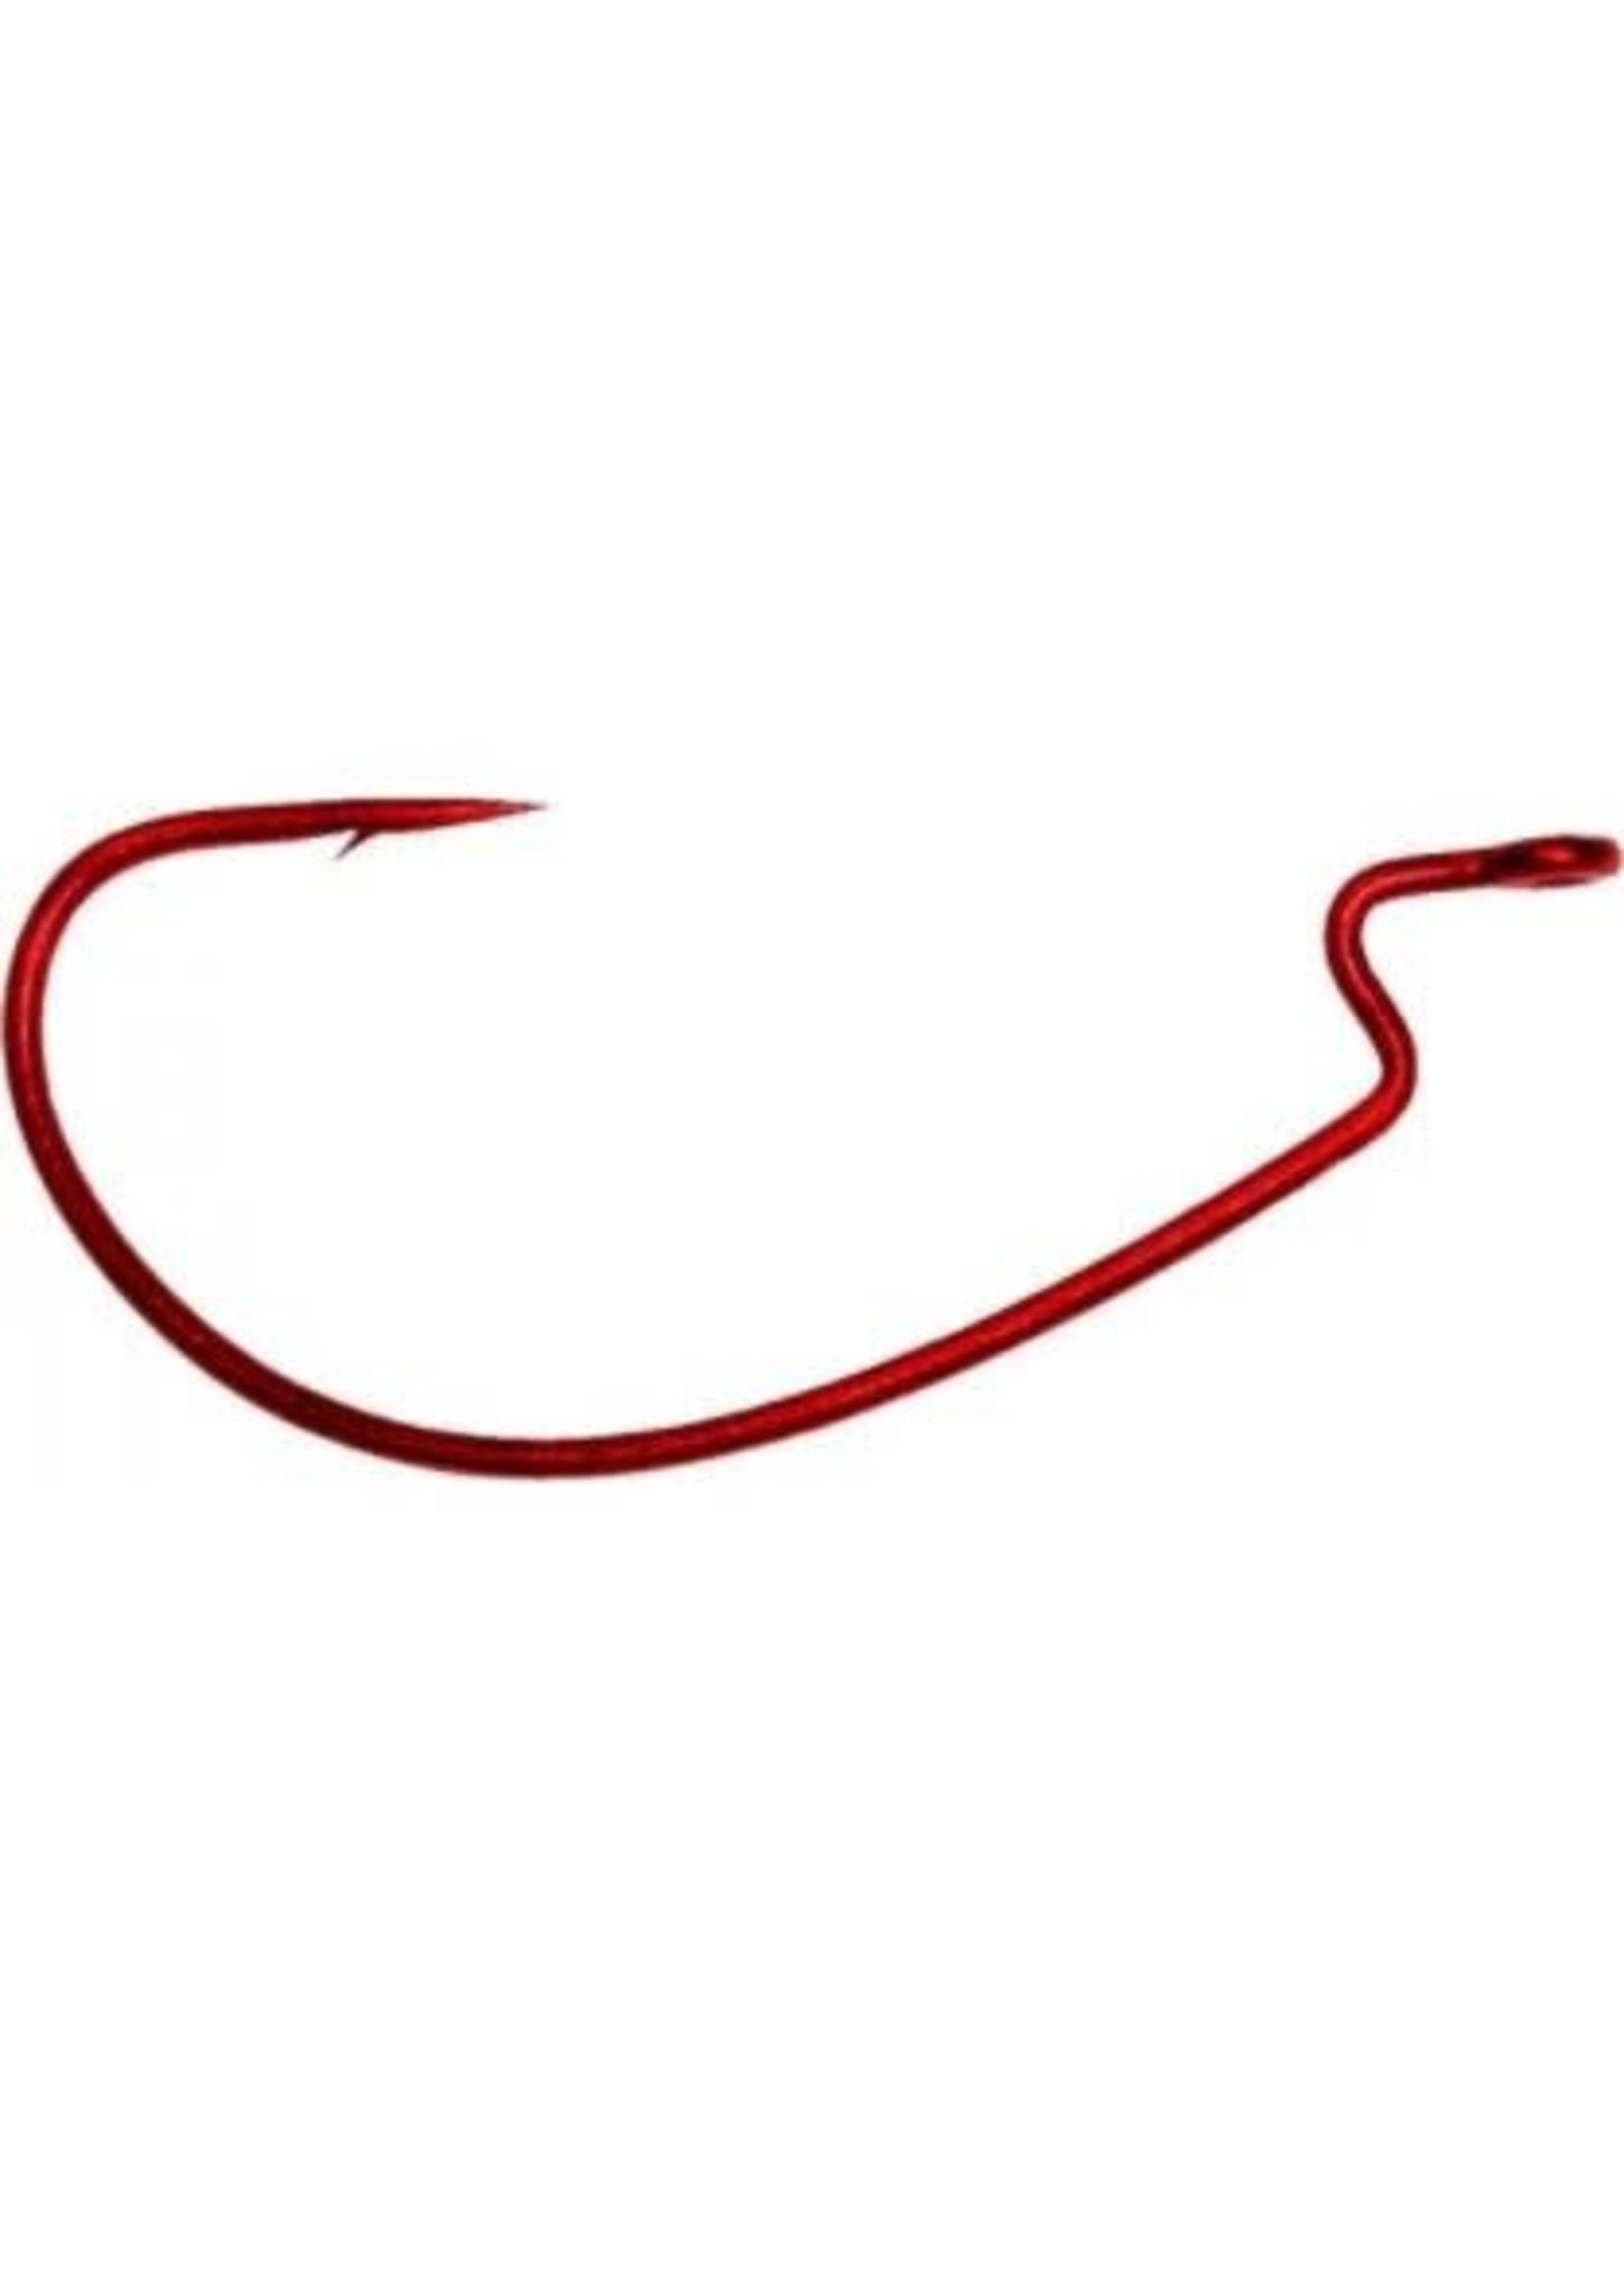 Daiichi Fat Gap Worm Hook Red 2/0